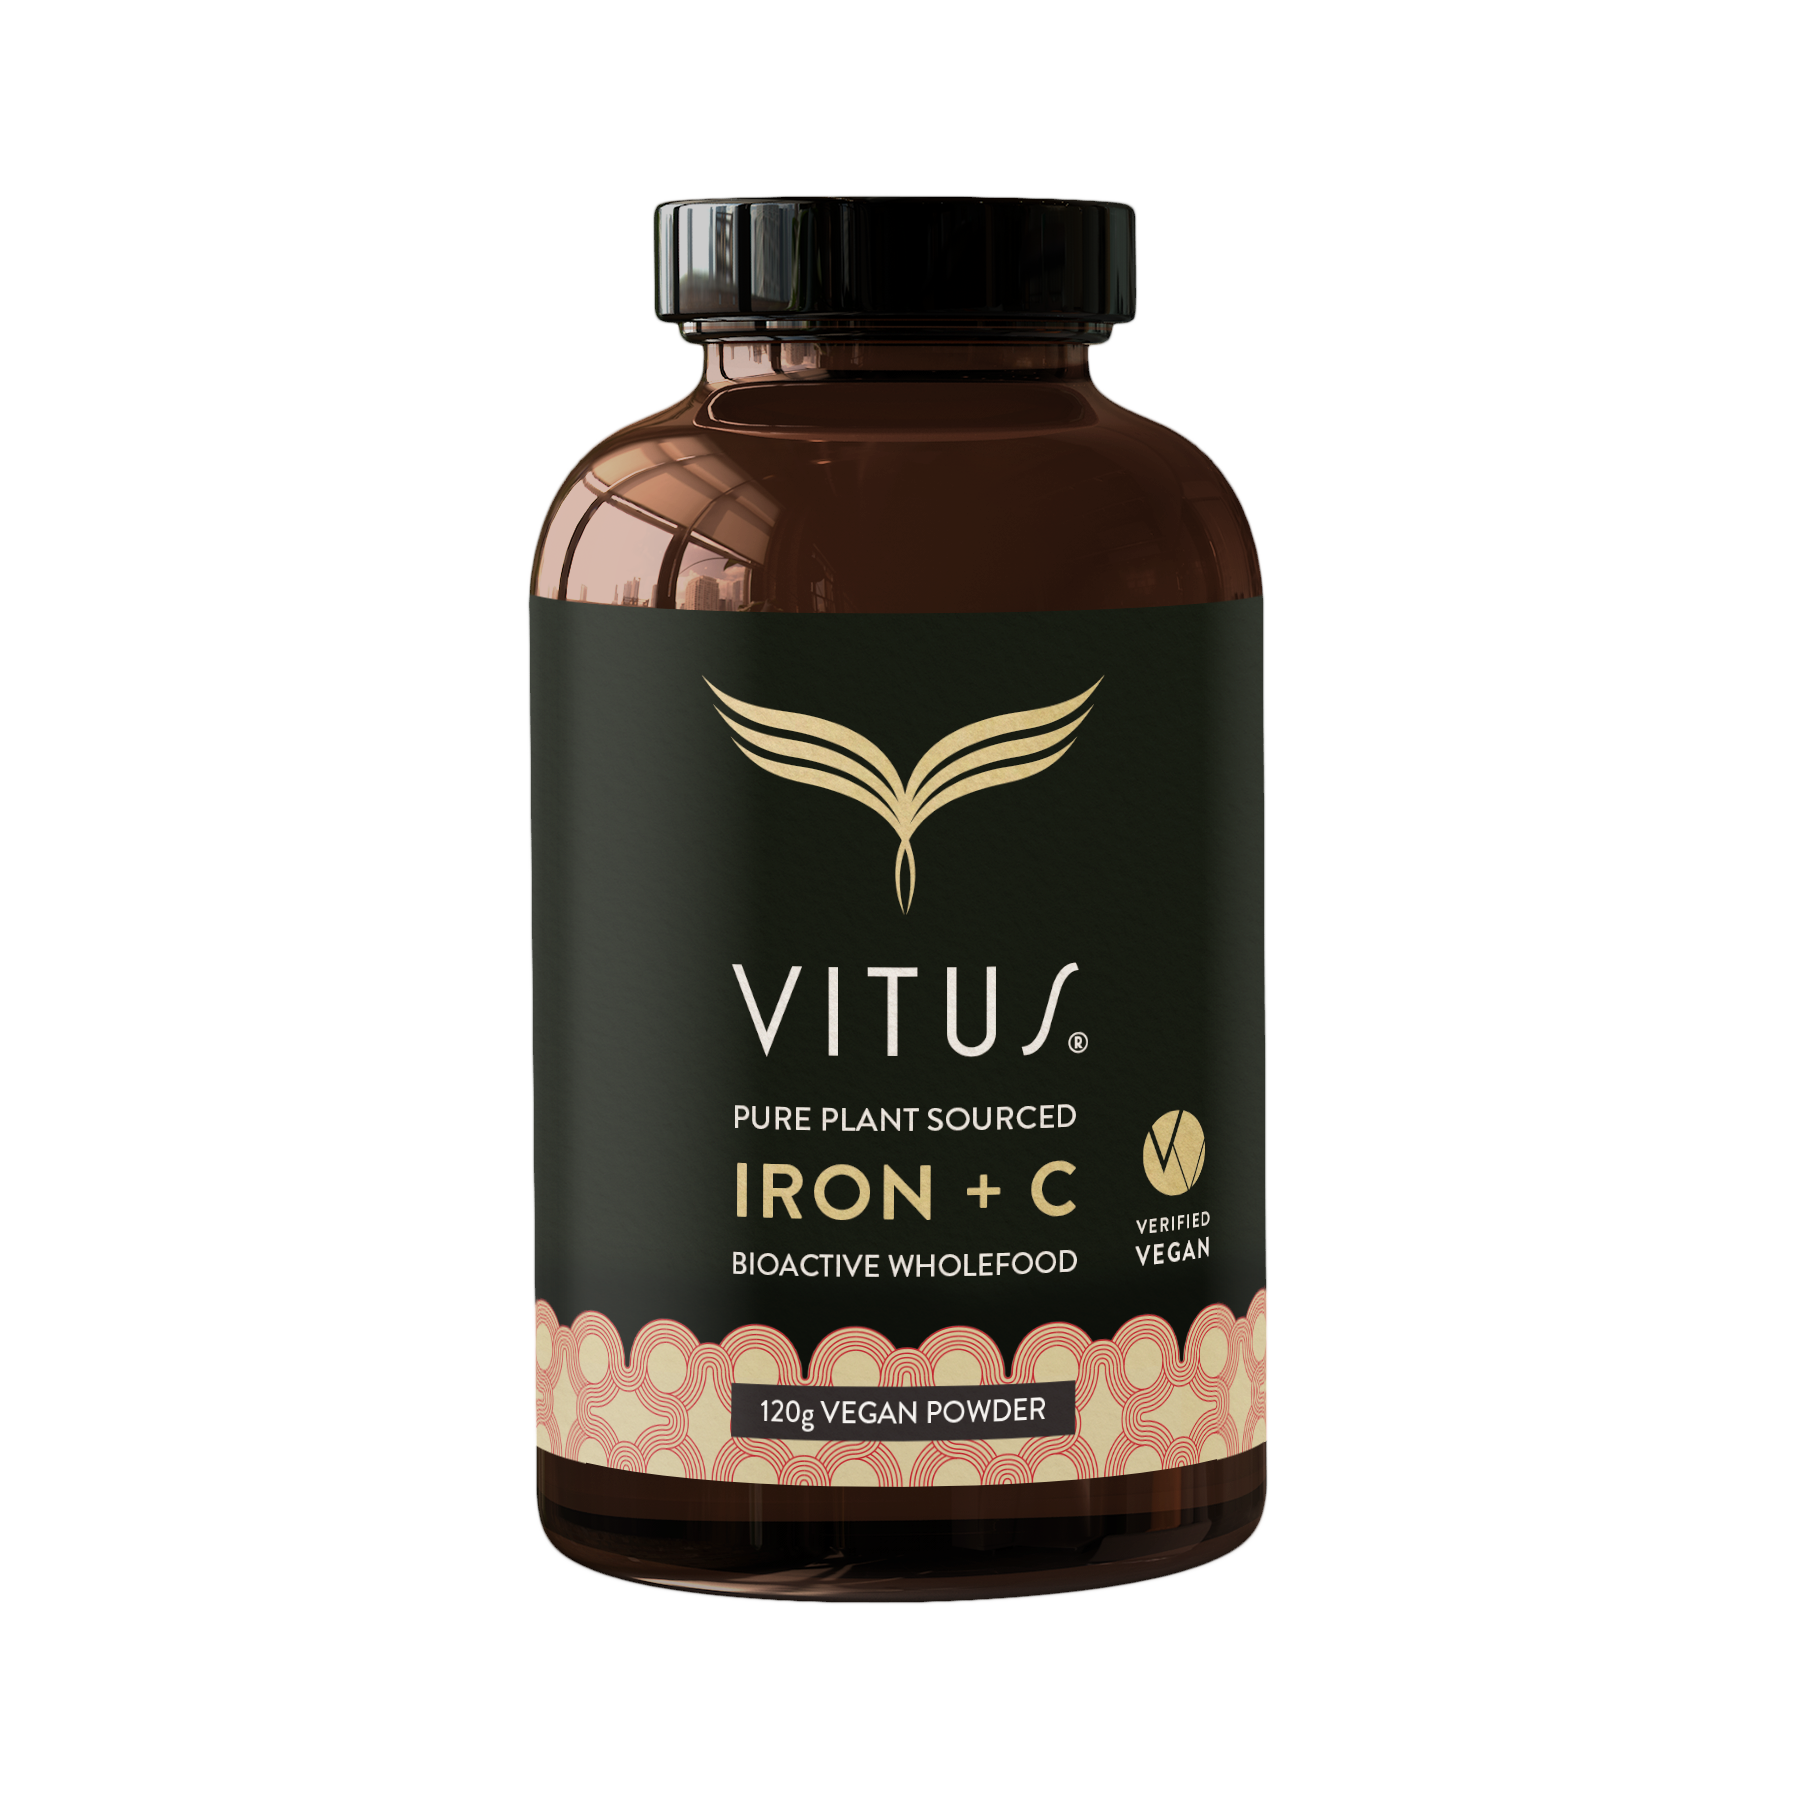 VITUS Iron + C